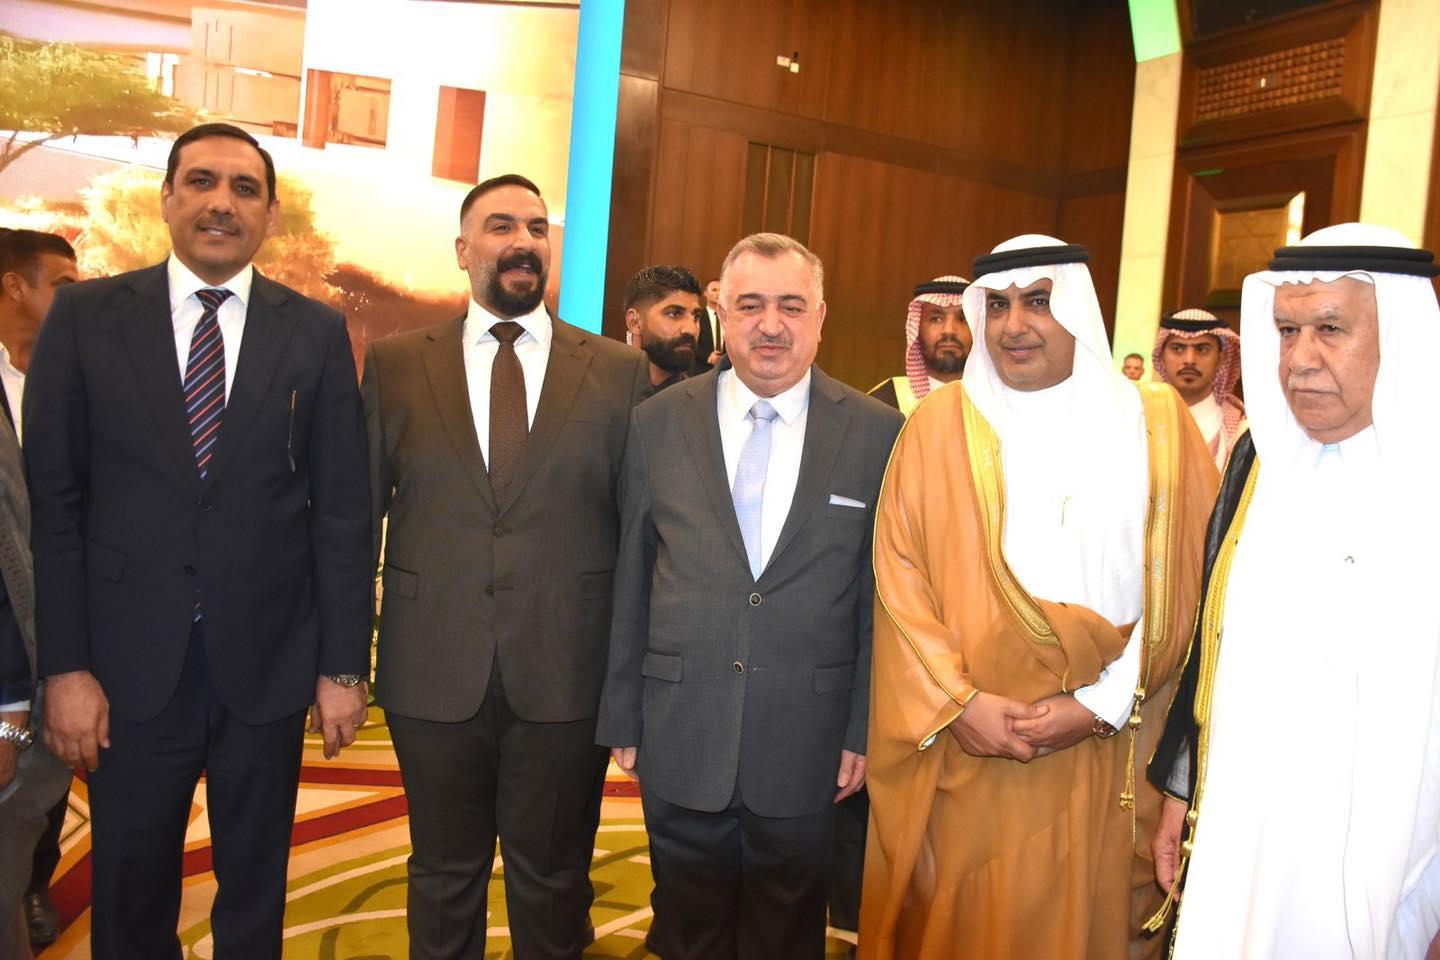 الوكيل البرزنجي يشارك في حفل إستقبال السفارة السعودية لدى العراق بمناسبة ذكرى اليوم الوطني (93) للمملكة العربية السعودية